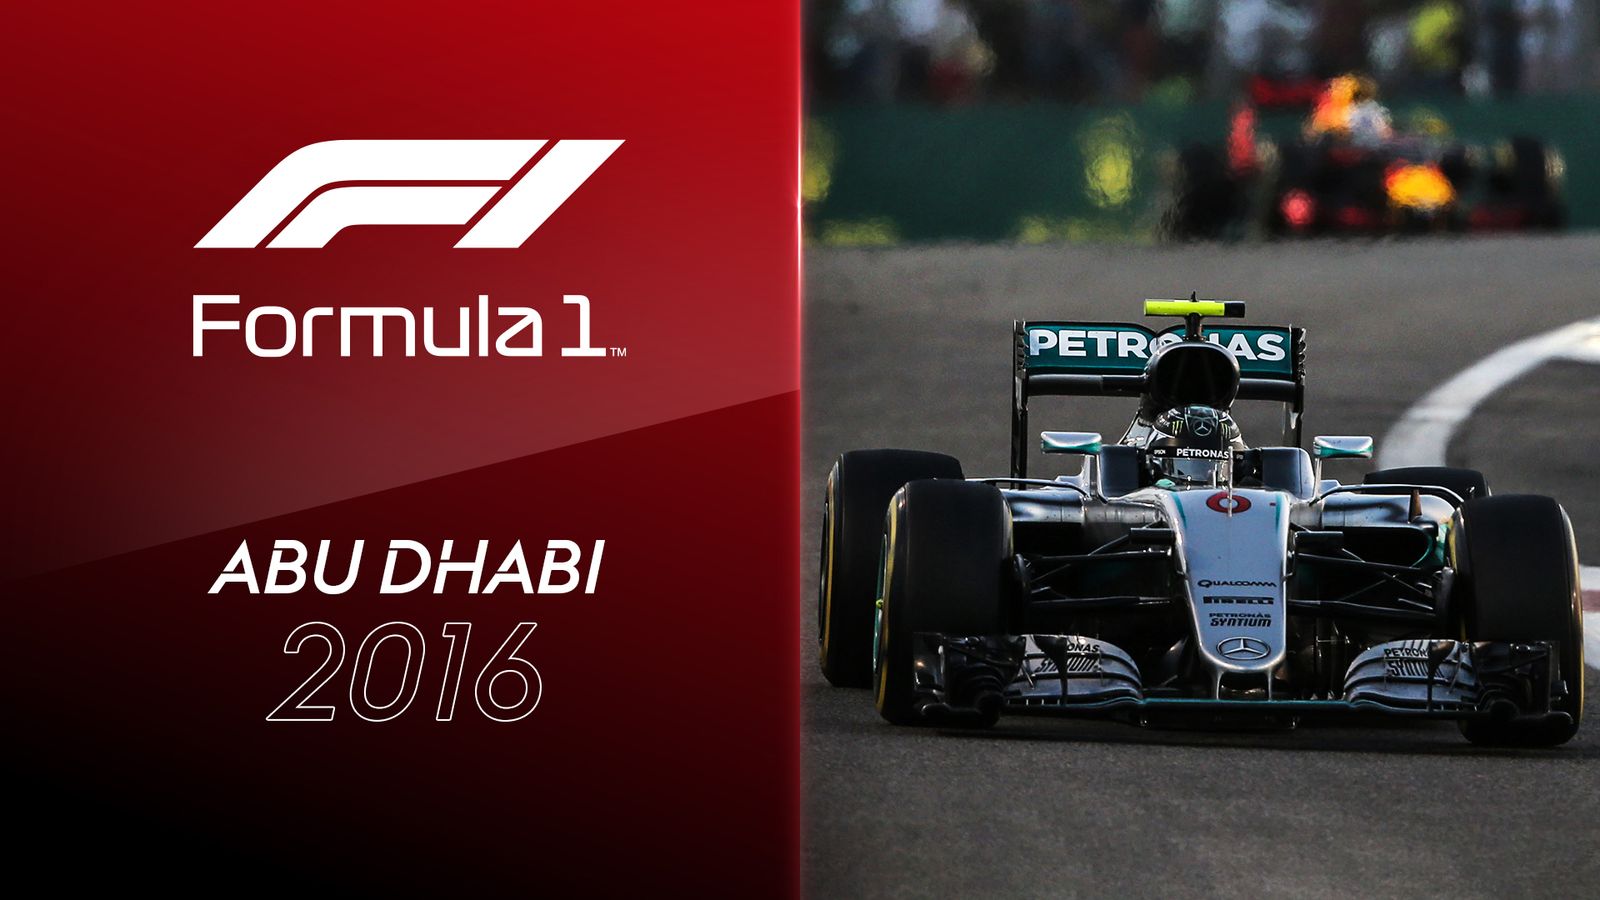 Formel 1 Video Rosberg triumphiert in Abu Dhabi und holt sich WM-Titel Formel 1 News Sky Sport